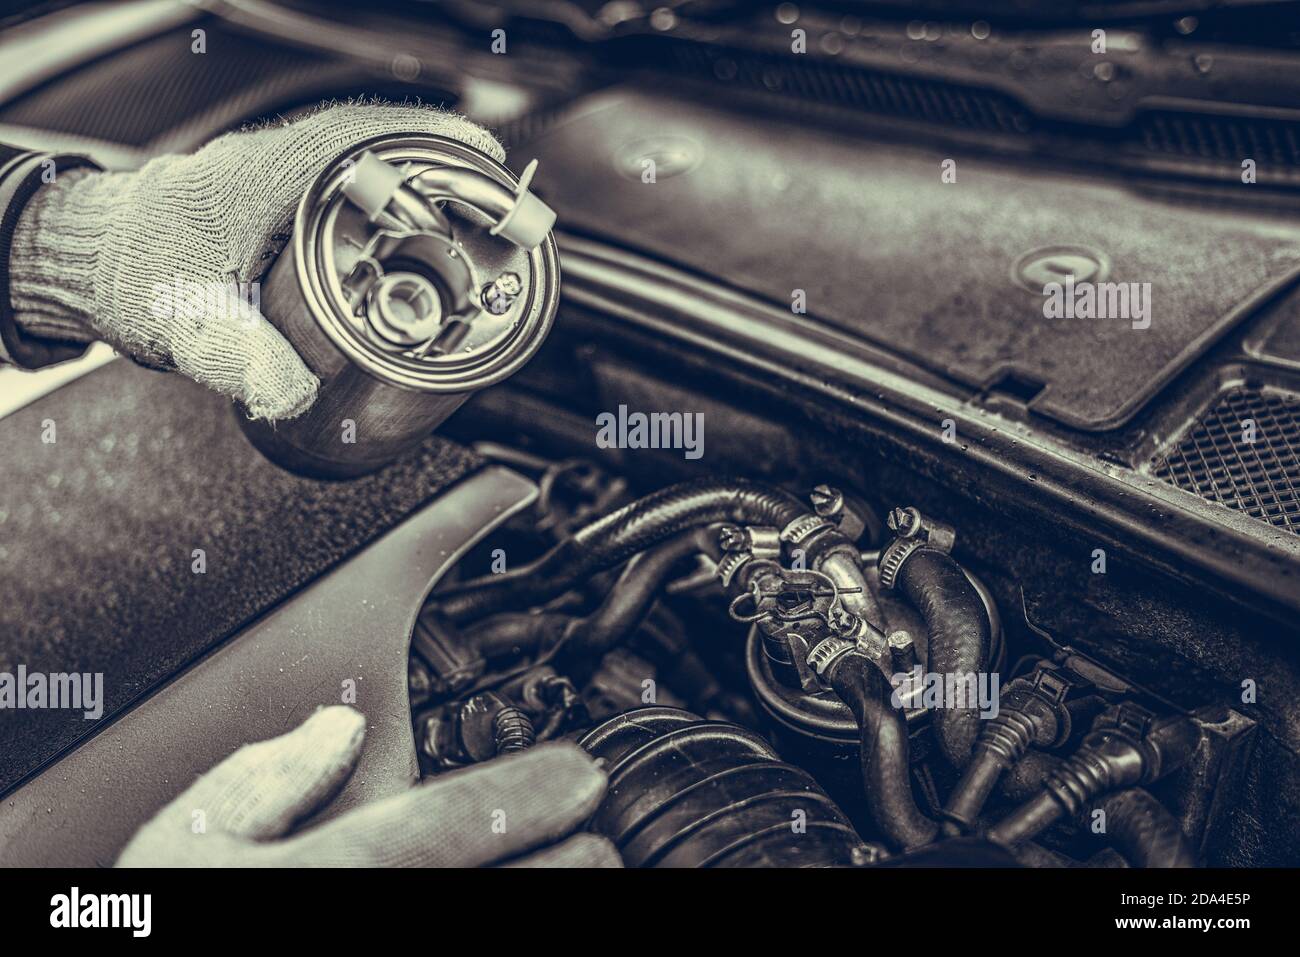 Ein Automechaniker Installiert Einen Neuen Motor Luftfilter Im Auto  Stockbild - Bild von verkehr, fristgerecht: 224899959